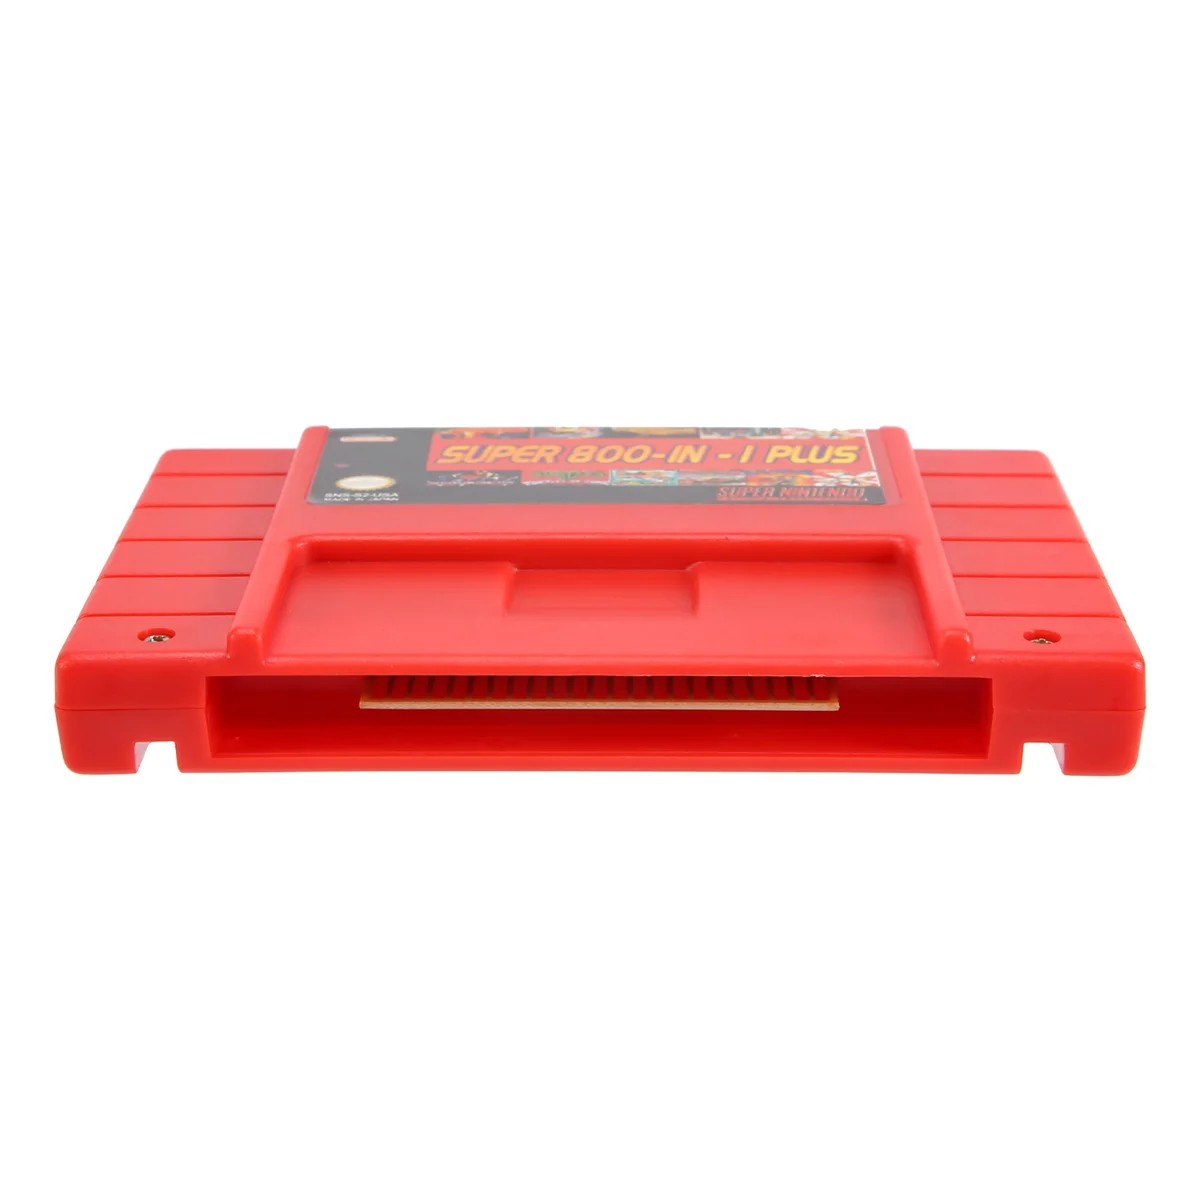 

Супер DIY ретро 800 в 1 плюс игровой Картридж для 16-битной игровой консоли карты США, красный